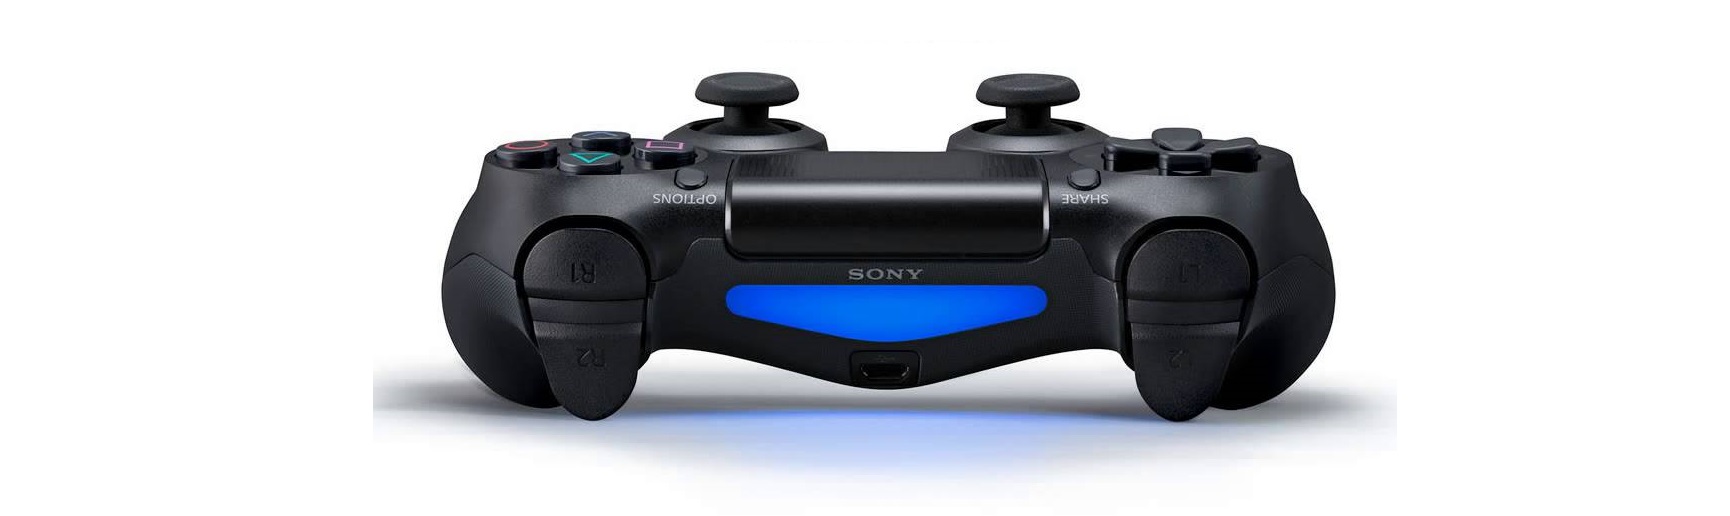 Tay cầm chơi game không dây PS4 Sony DUALSHOCK 4 Controller Midnight Blue CUH-ZCT2G22 tích hợp cảm biến chuyển động